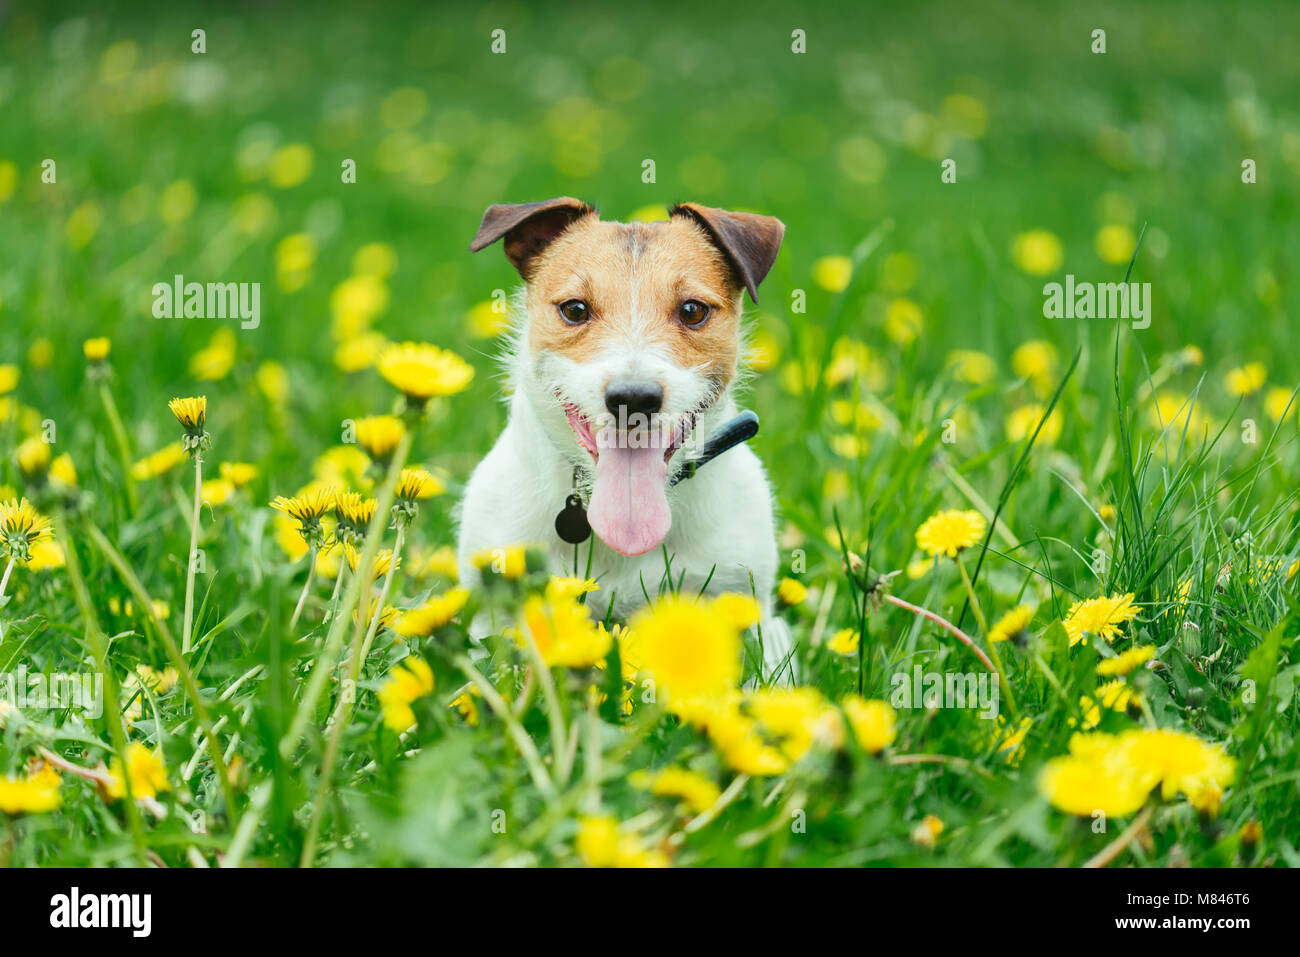 Happy pet dog sitting im Frühjahr grünes Gras und gelben Löwenzahn Blumen Stockfoto